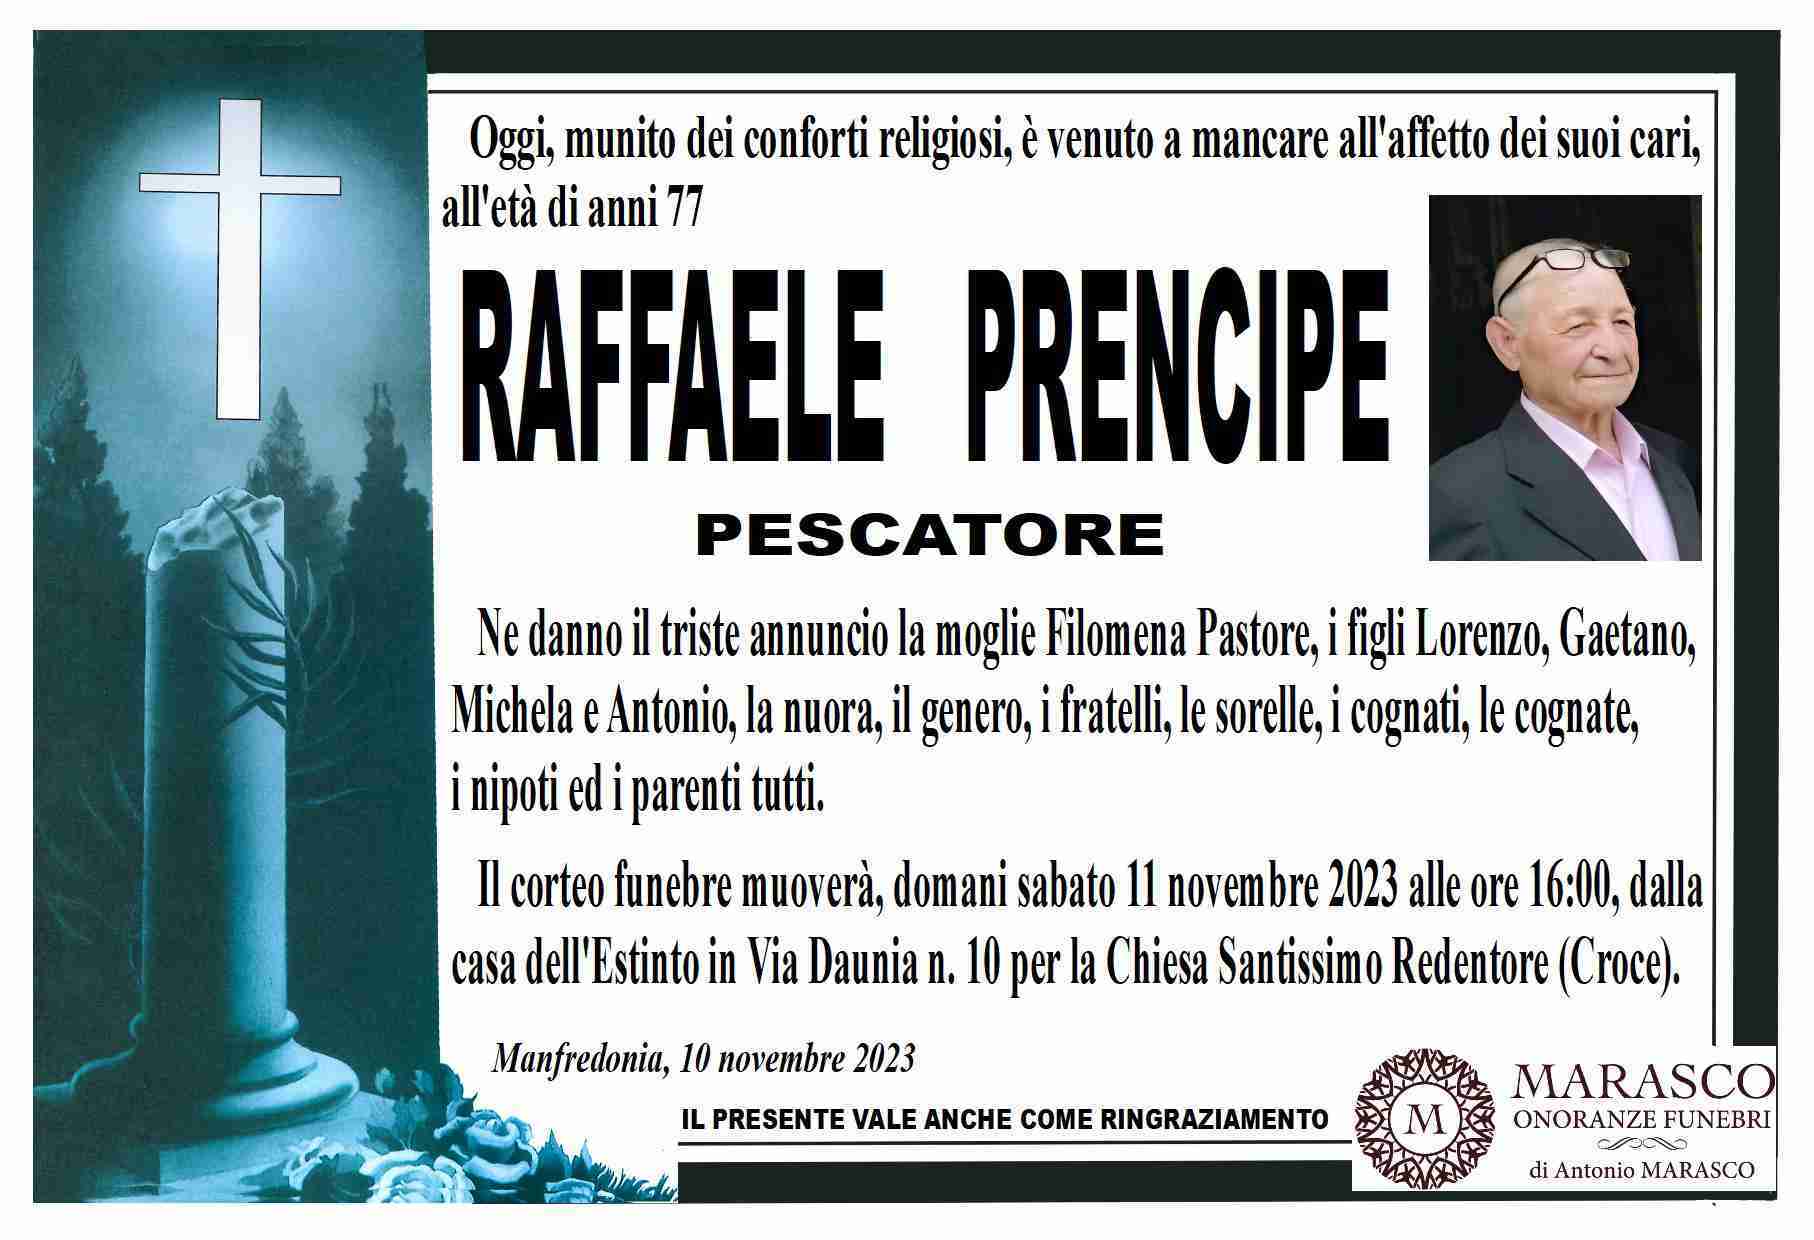 Raffaele Prencipe